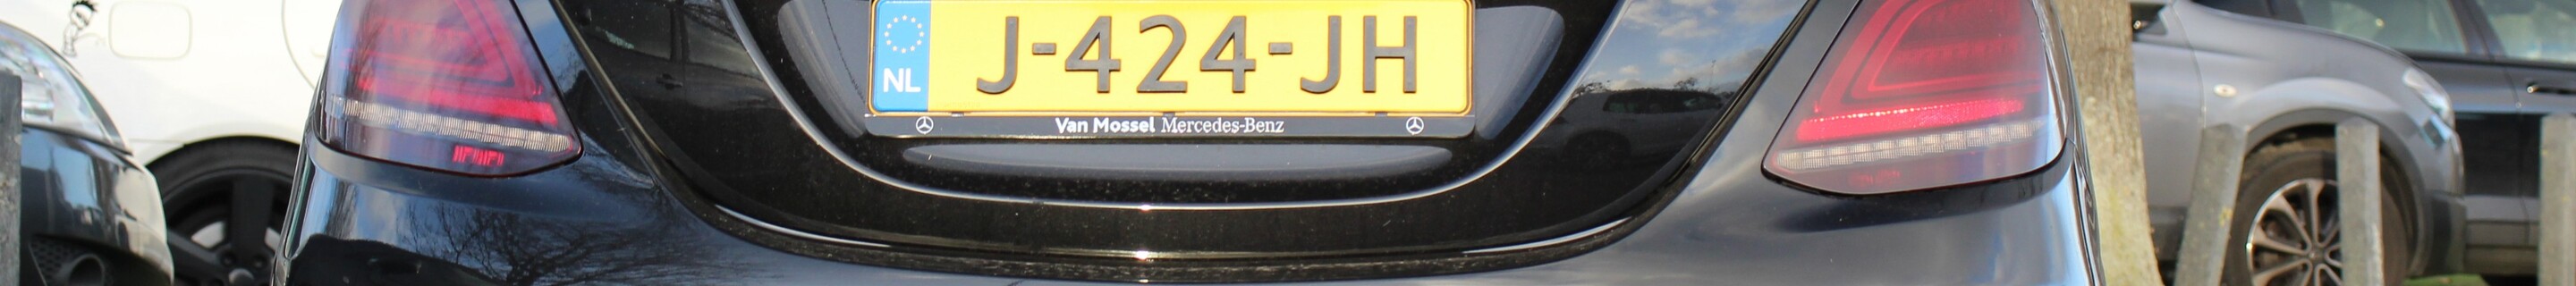 Mercedes-AMG C 63 W205